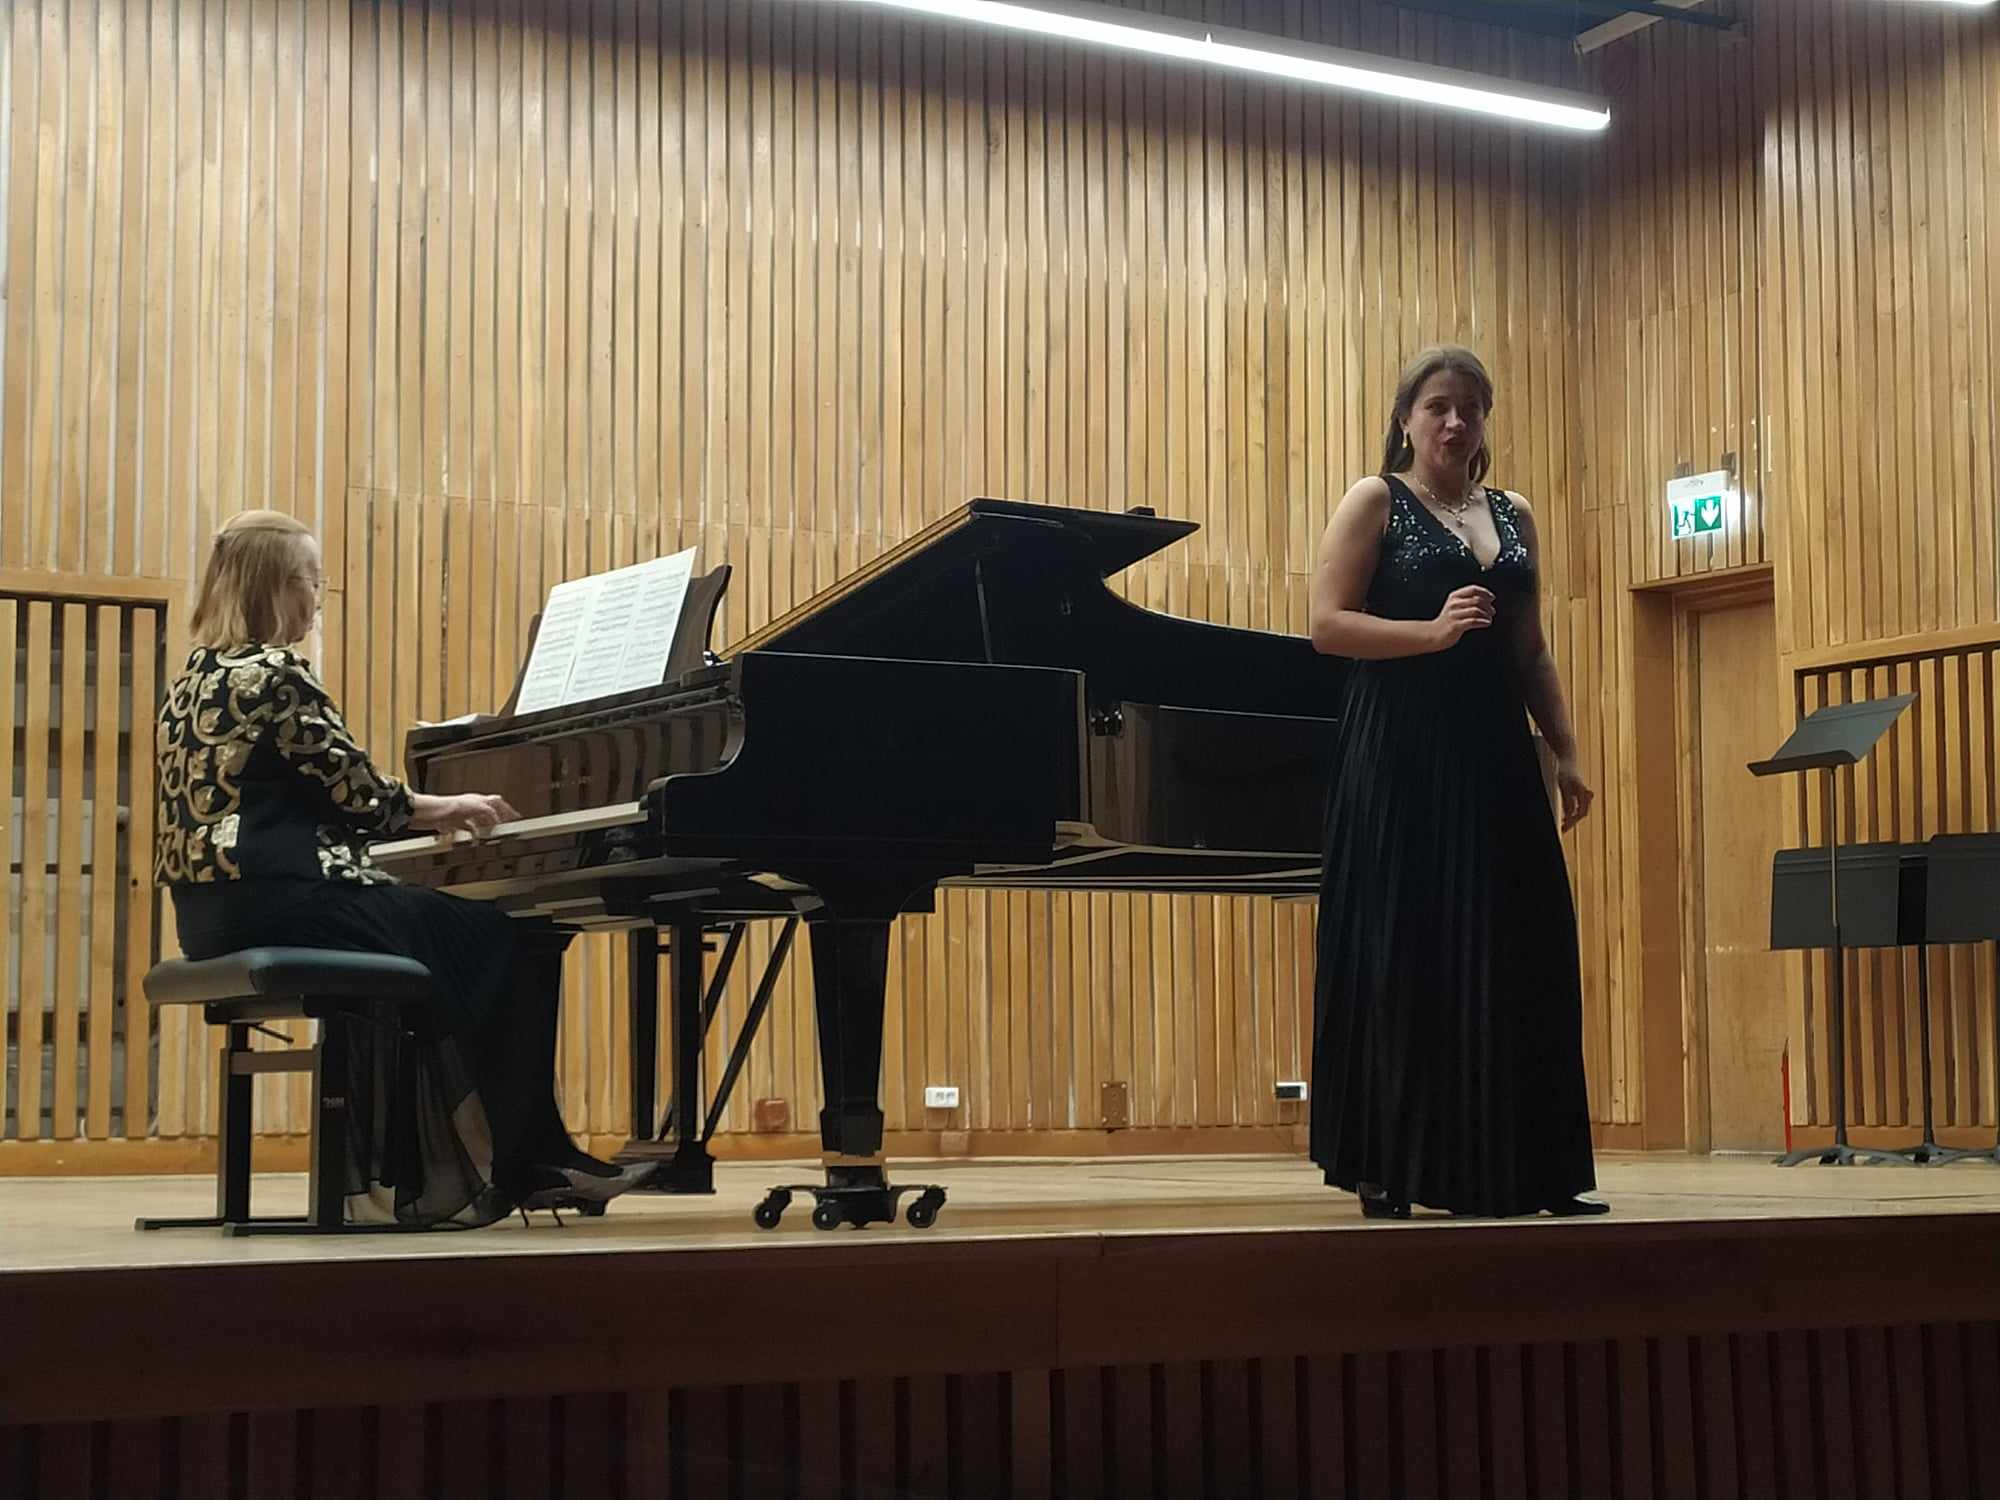 Kobieta gra na fortepianie, druga kobieta śpiewa.